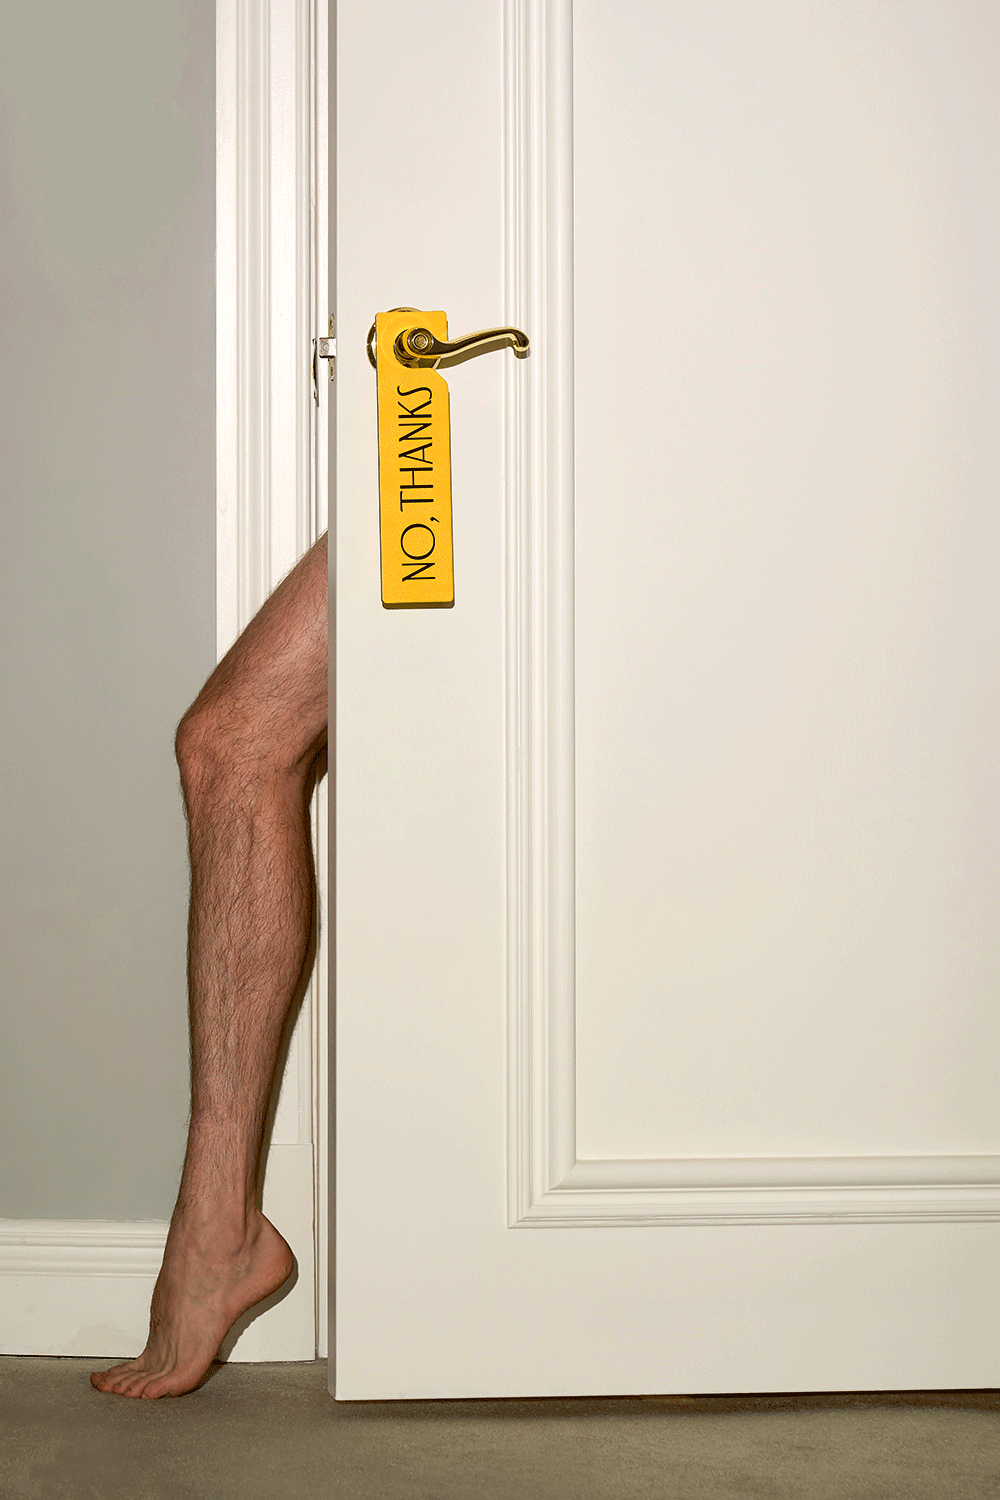 Hotelbranding: Ein stark behaartes Bein schaut hinter einer Hoteltür hervor, an deren Klinke ein gelbes Schild hängt auf der "No, Thanks" geschrieben ist